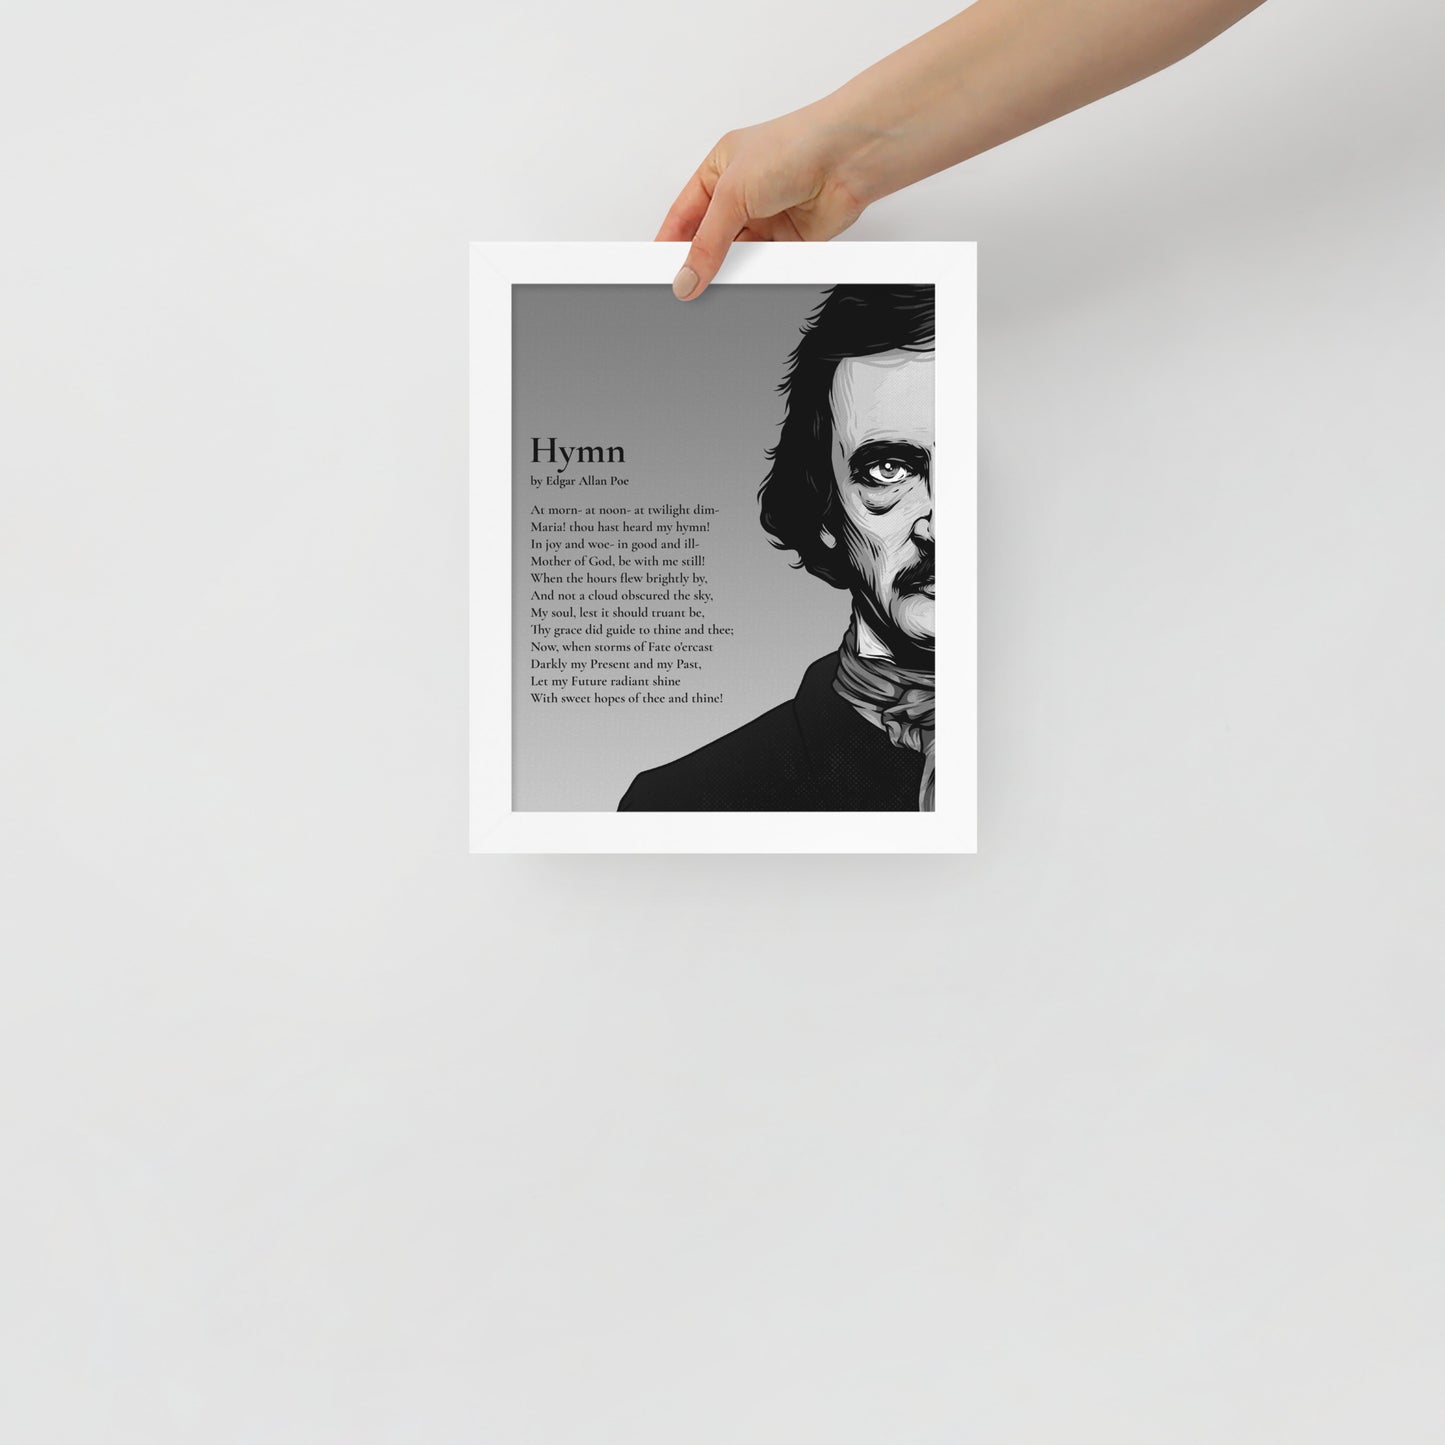 Edgar Allan Poe's 'Hymn' Framed Matted Poster - 8 x 10 White Frame